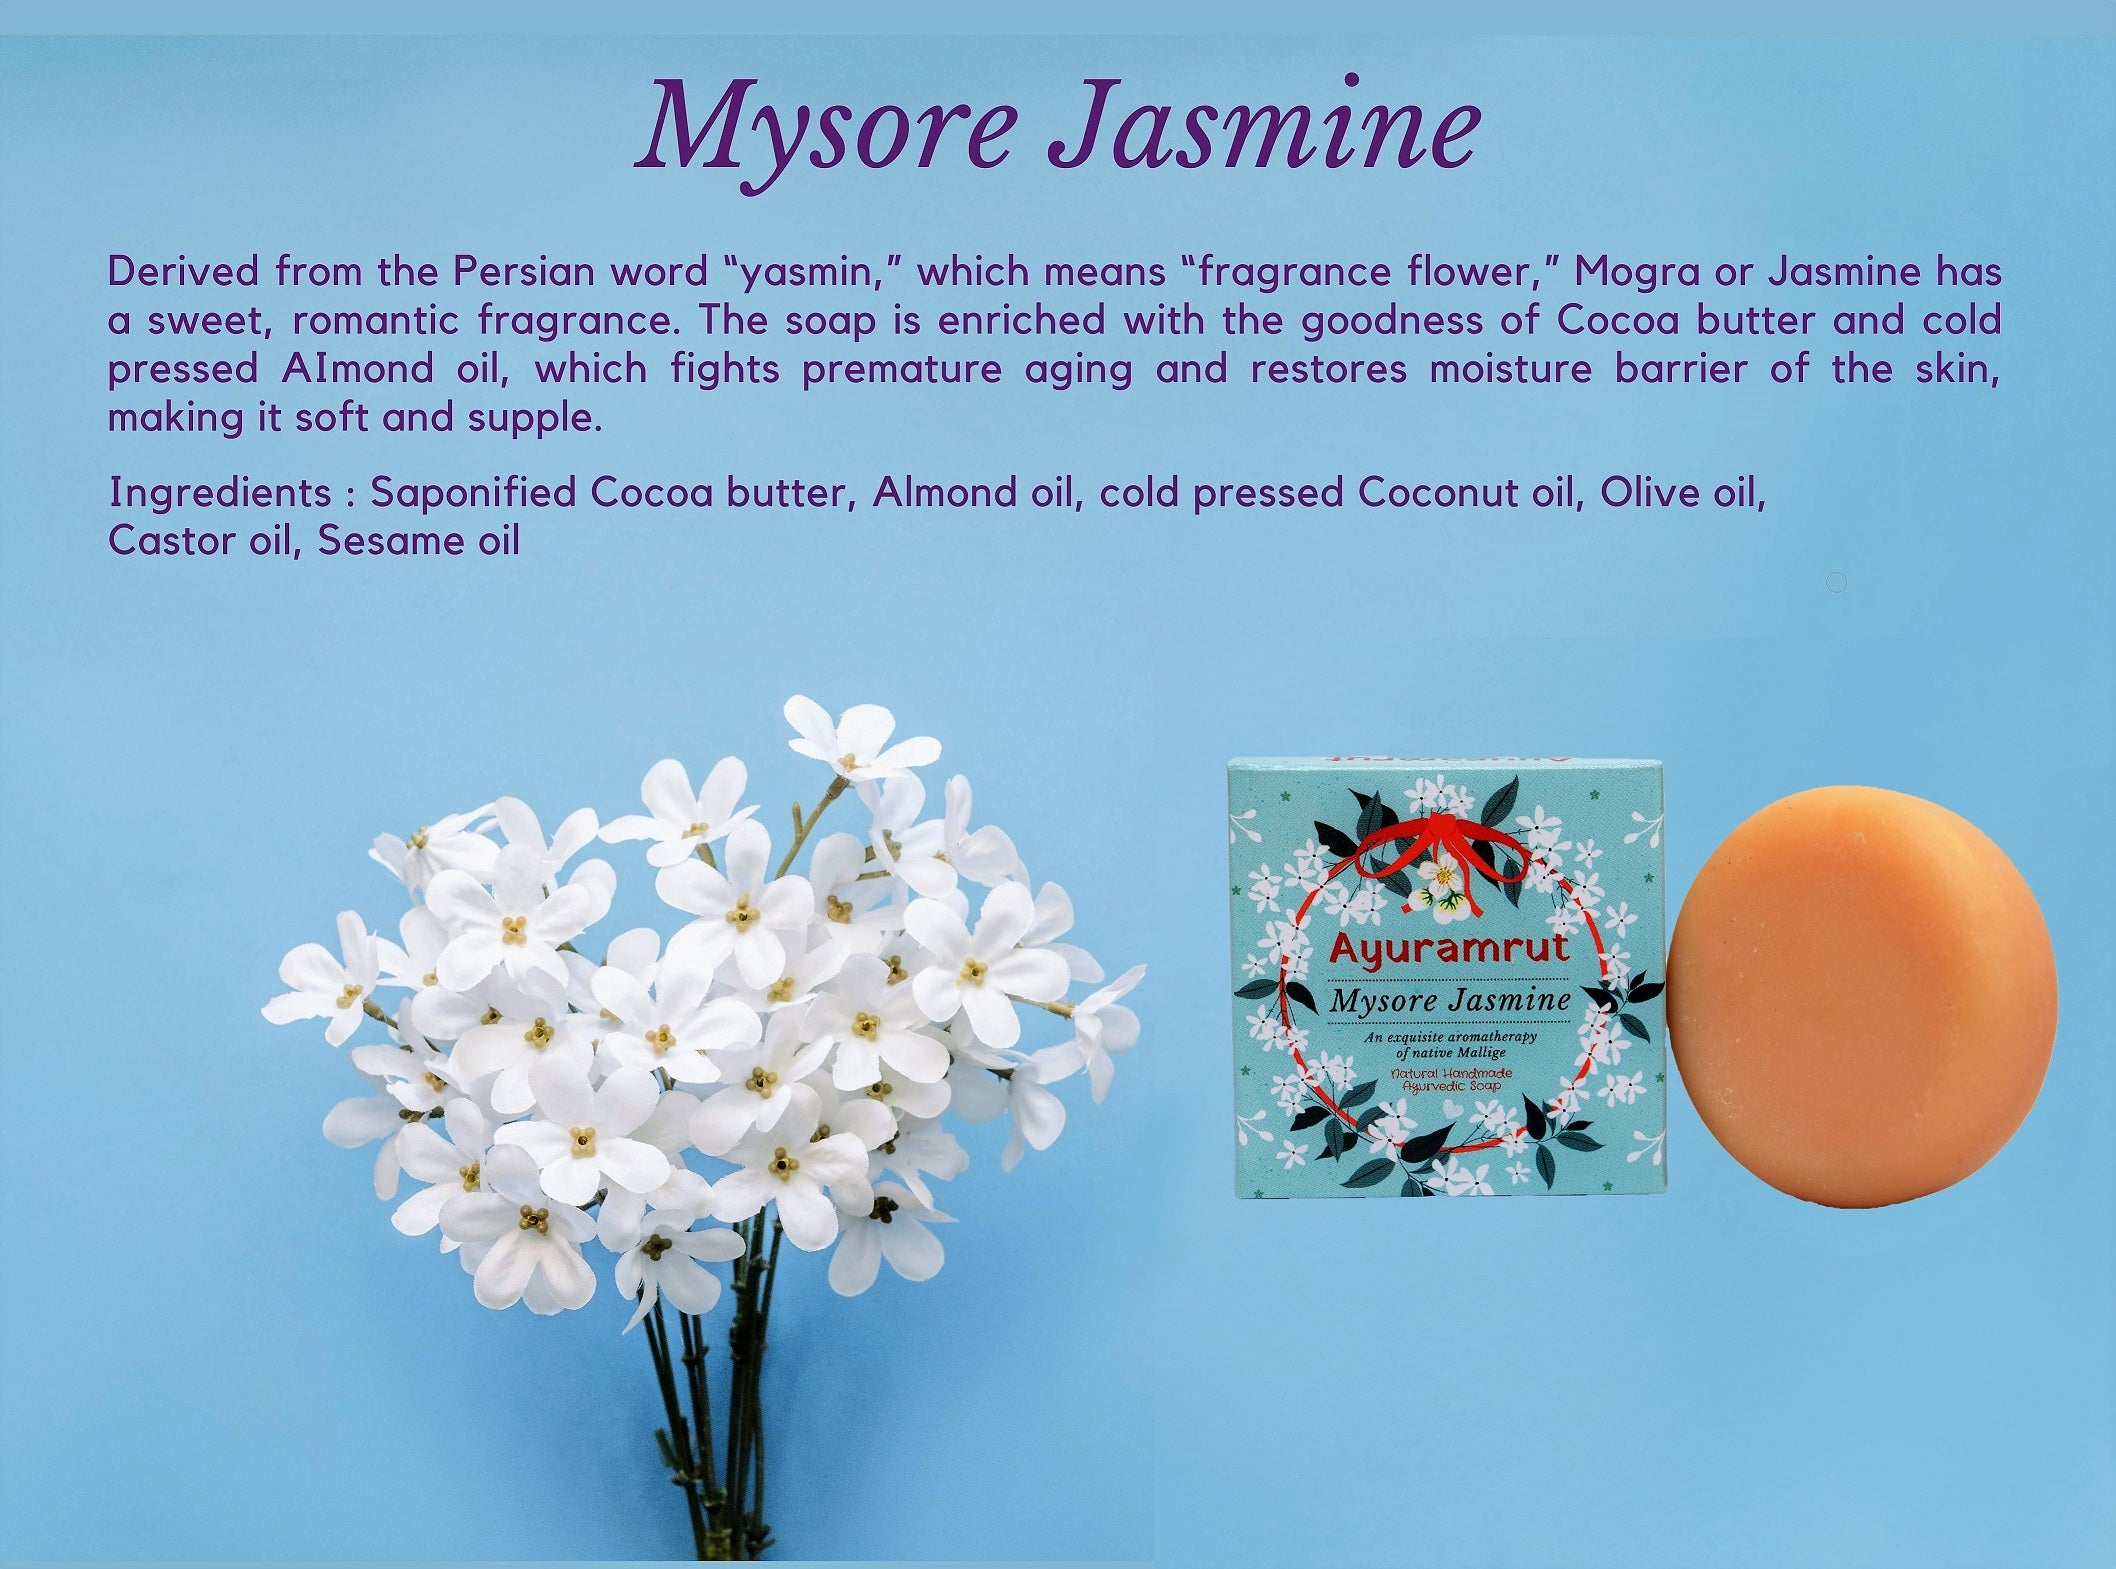 Ayuramrut Mysore Jasmine Natural Handmade Ayurvedic Soap (Pack of 4)